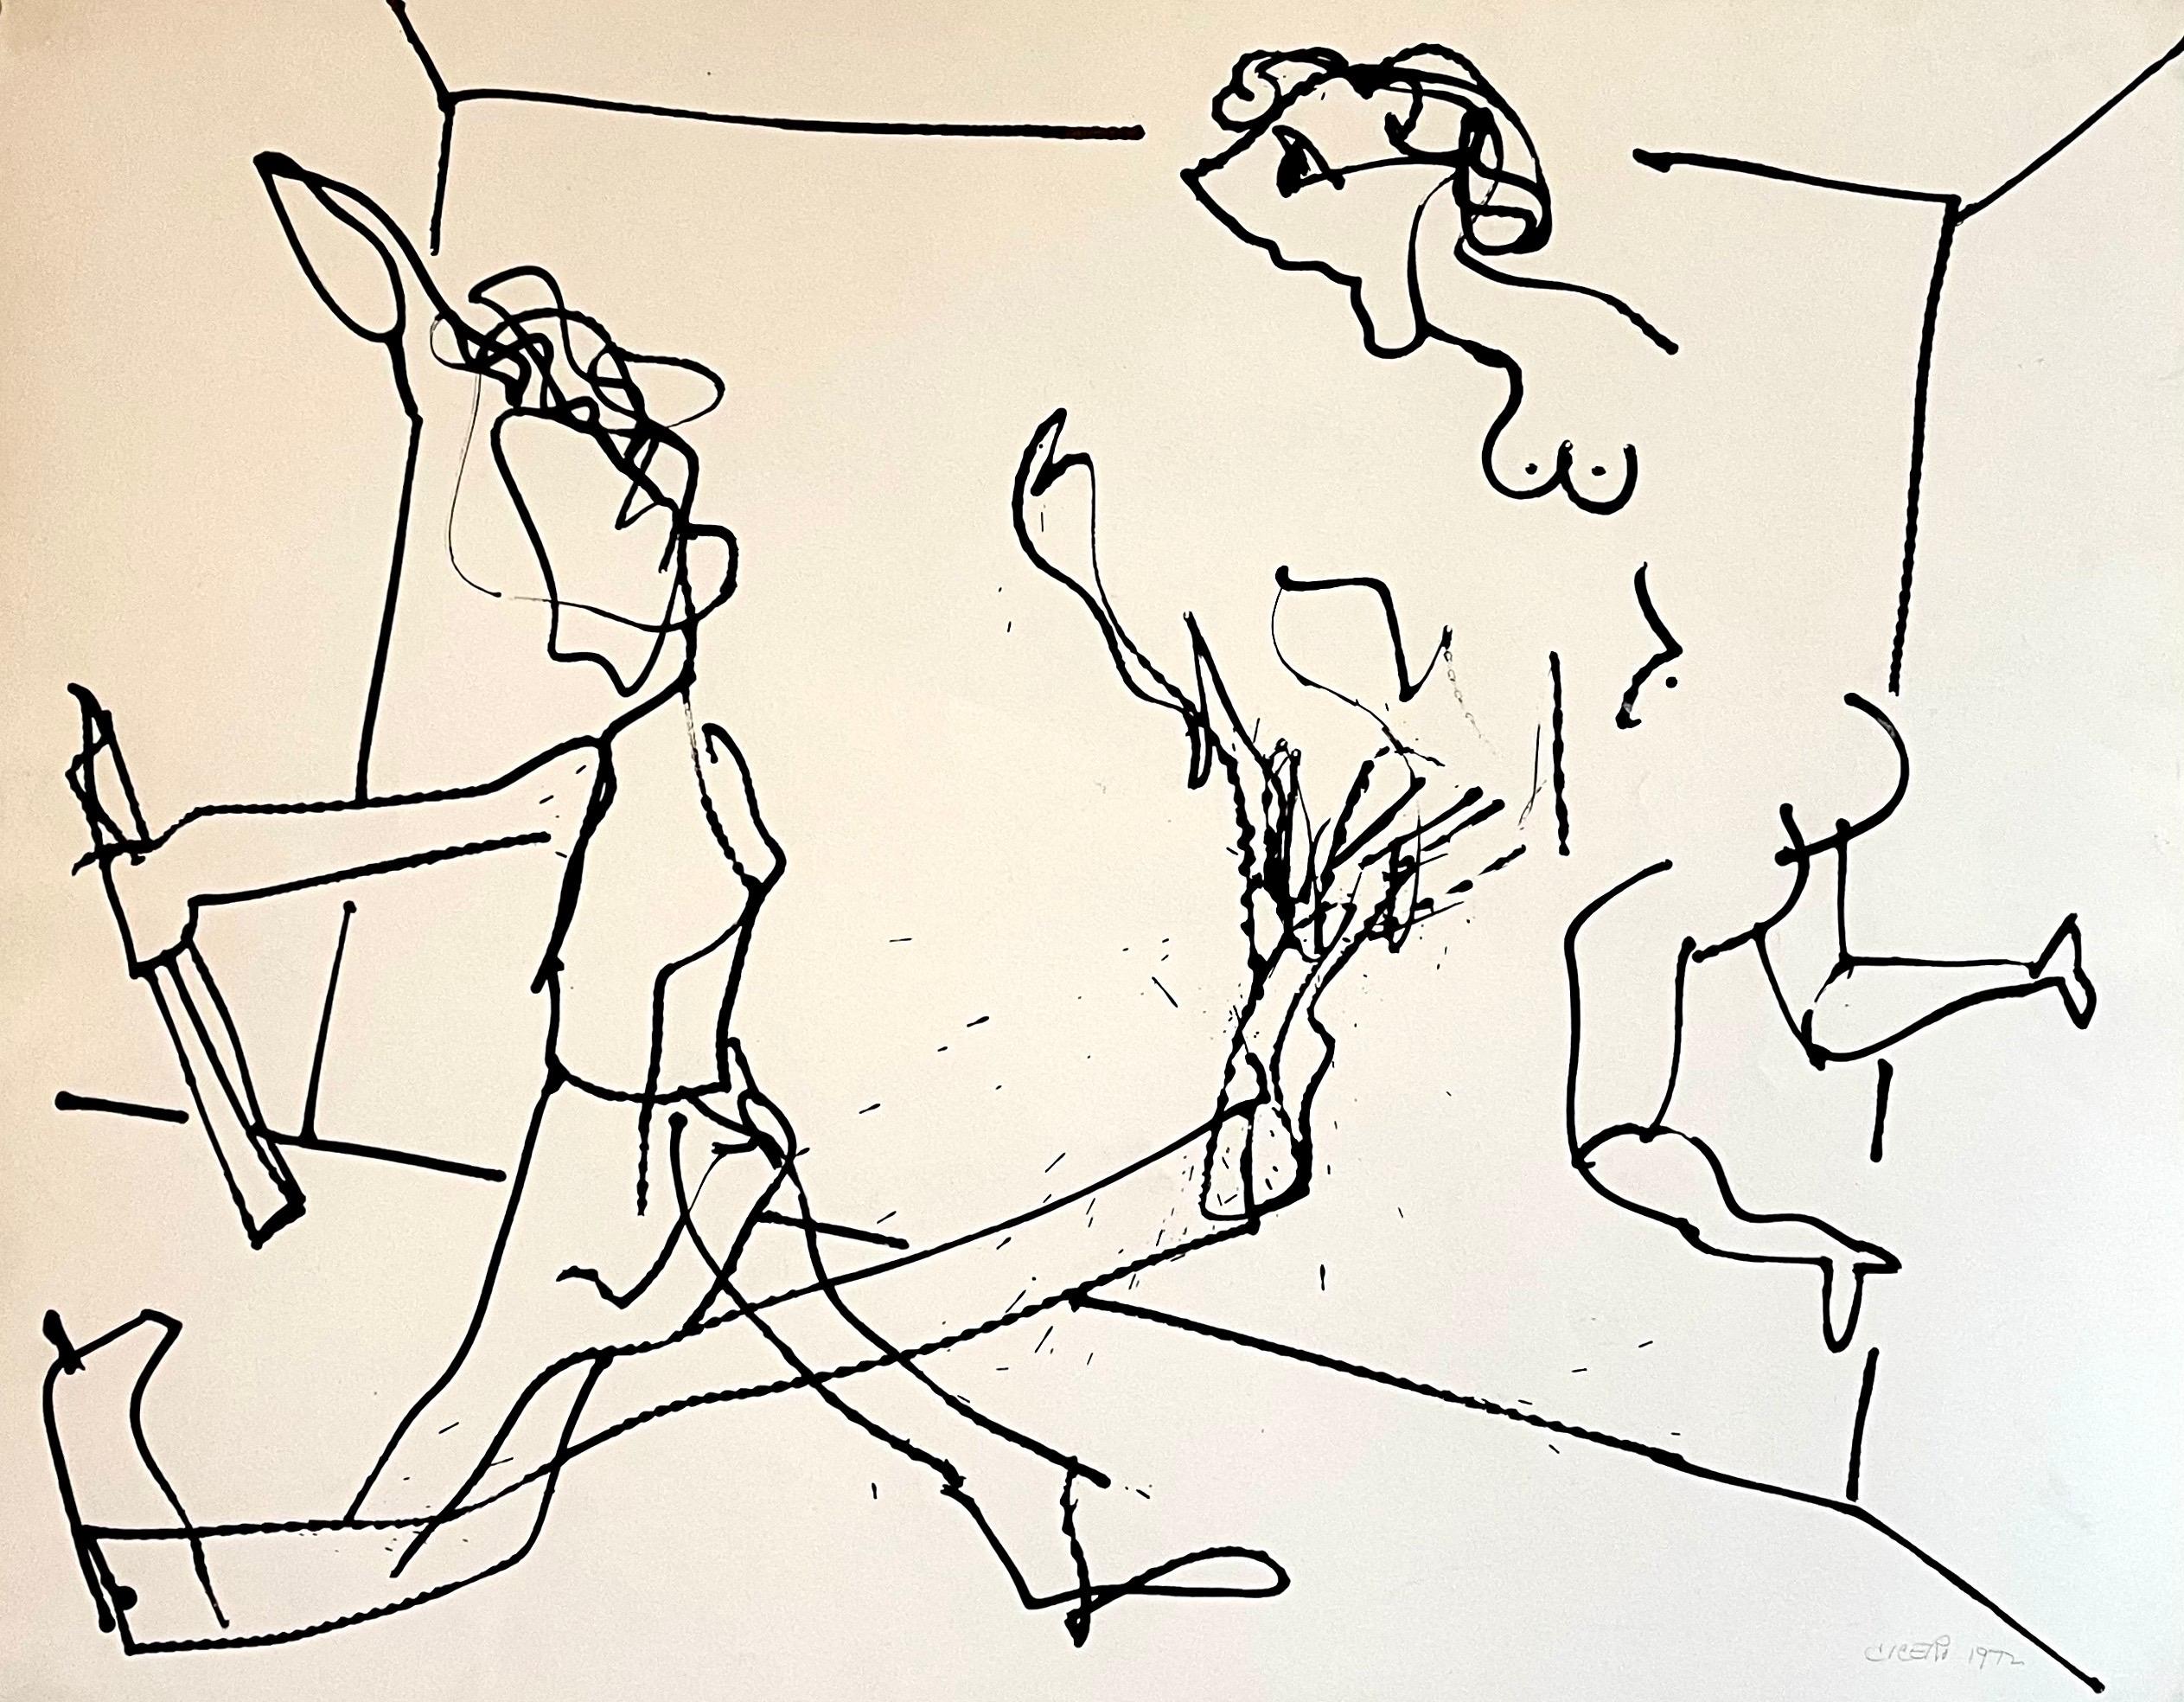 Abstrakt-expressionistische Zeichnung, Aquarellgemälde Carmen Cicero, New Yorker Schule